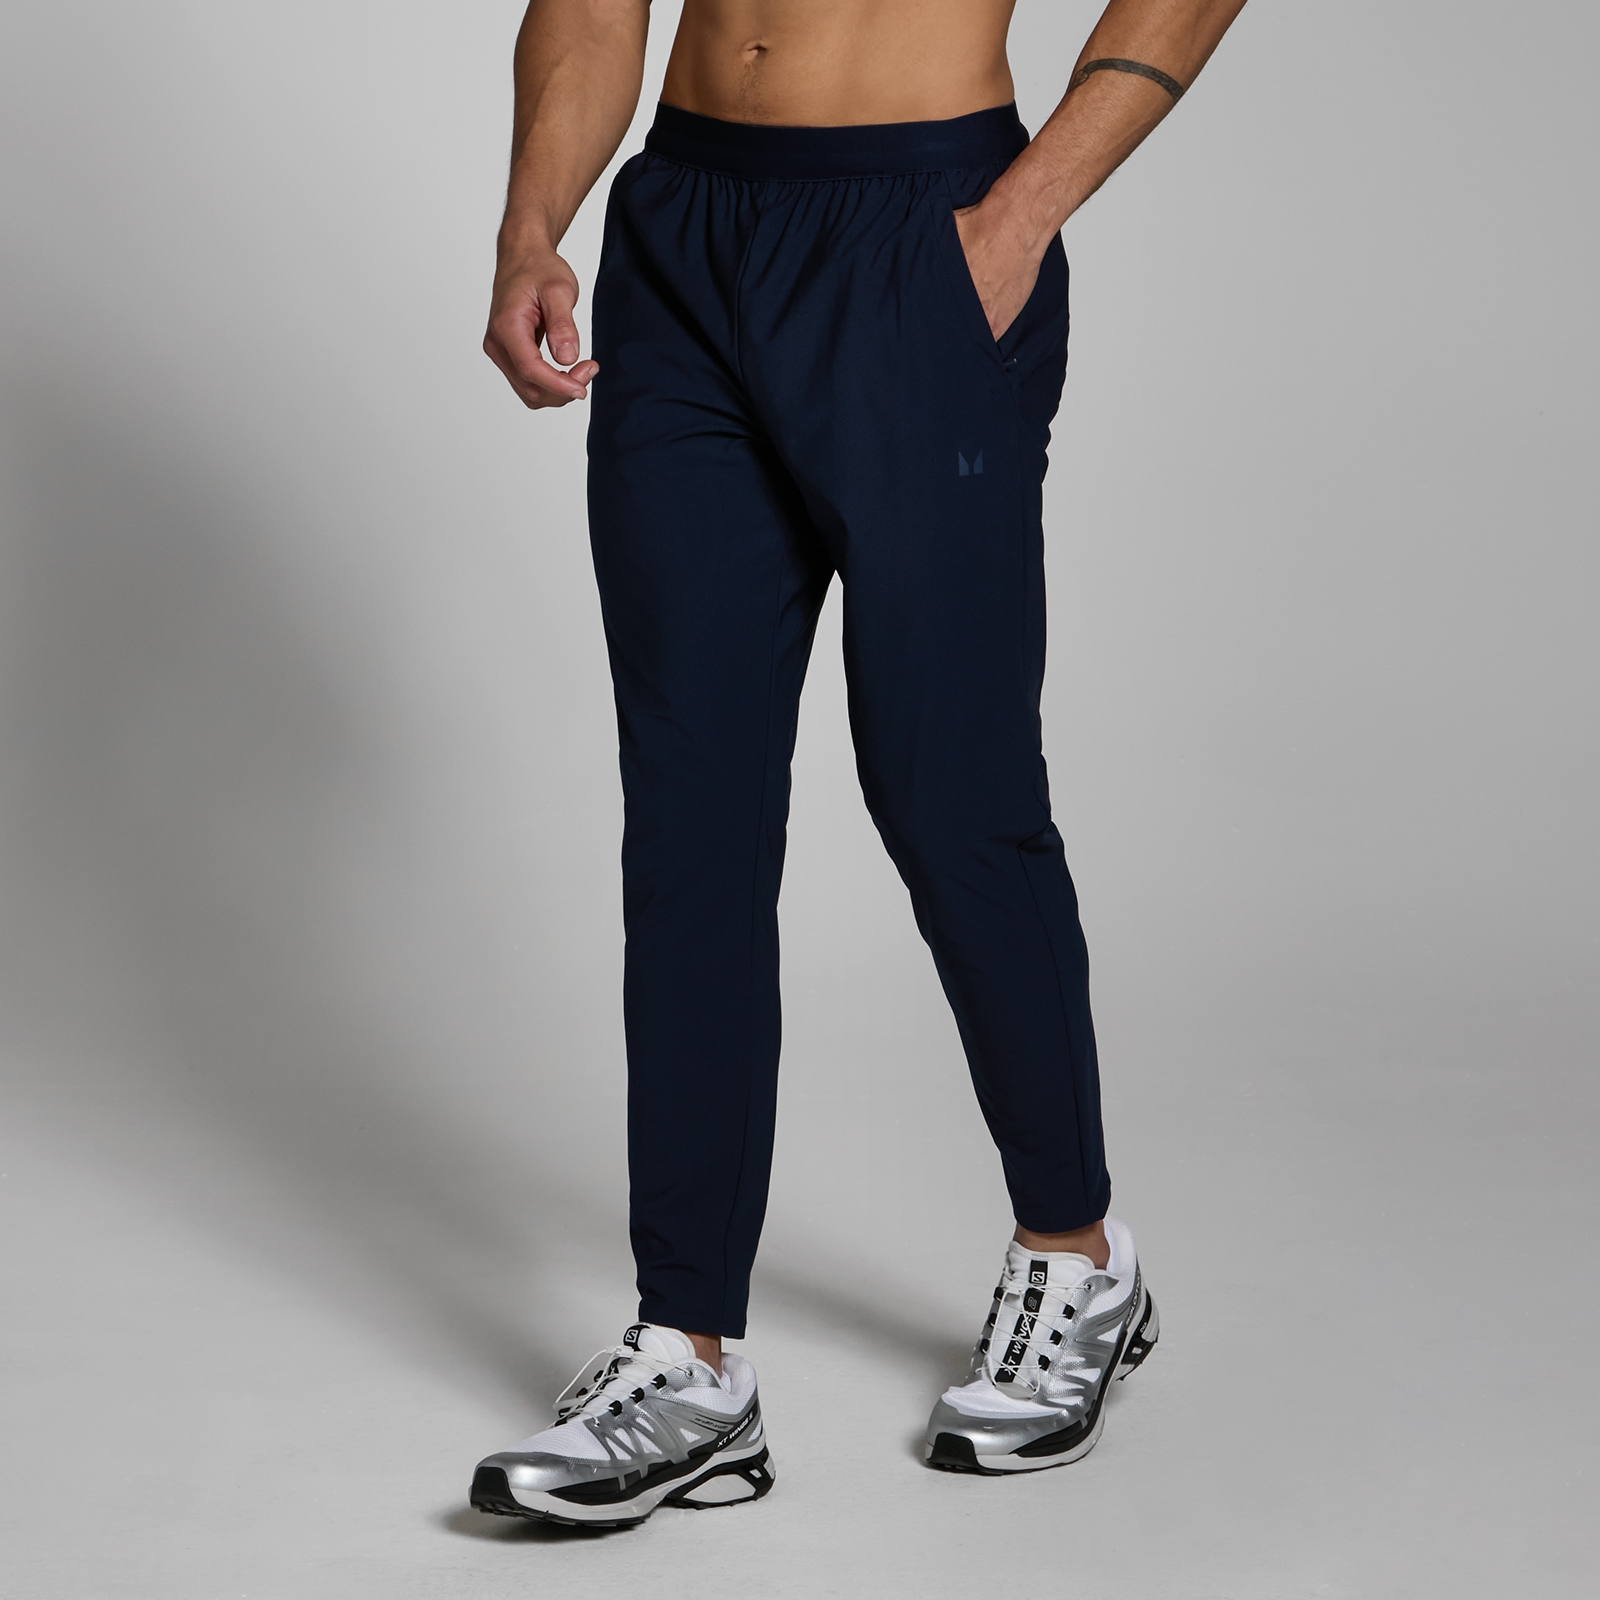 Image of Pantaloni da jogging in tessuto MP Lifestyle da uomo - Blu navy scuro - L